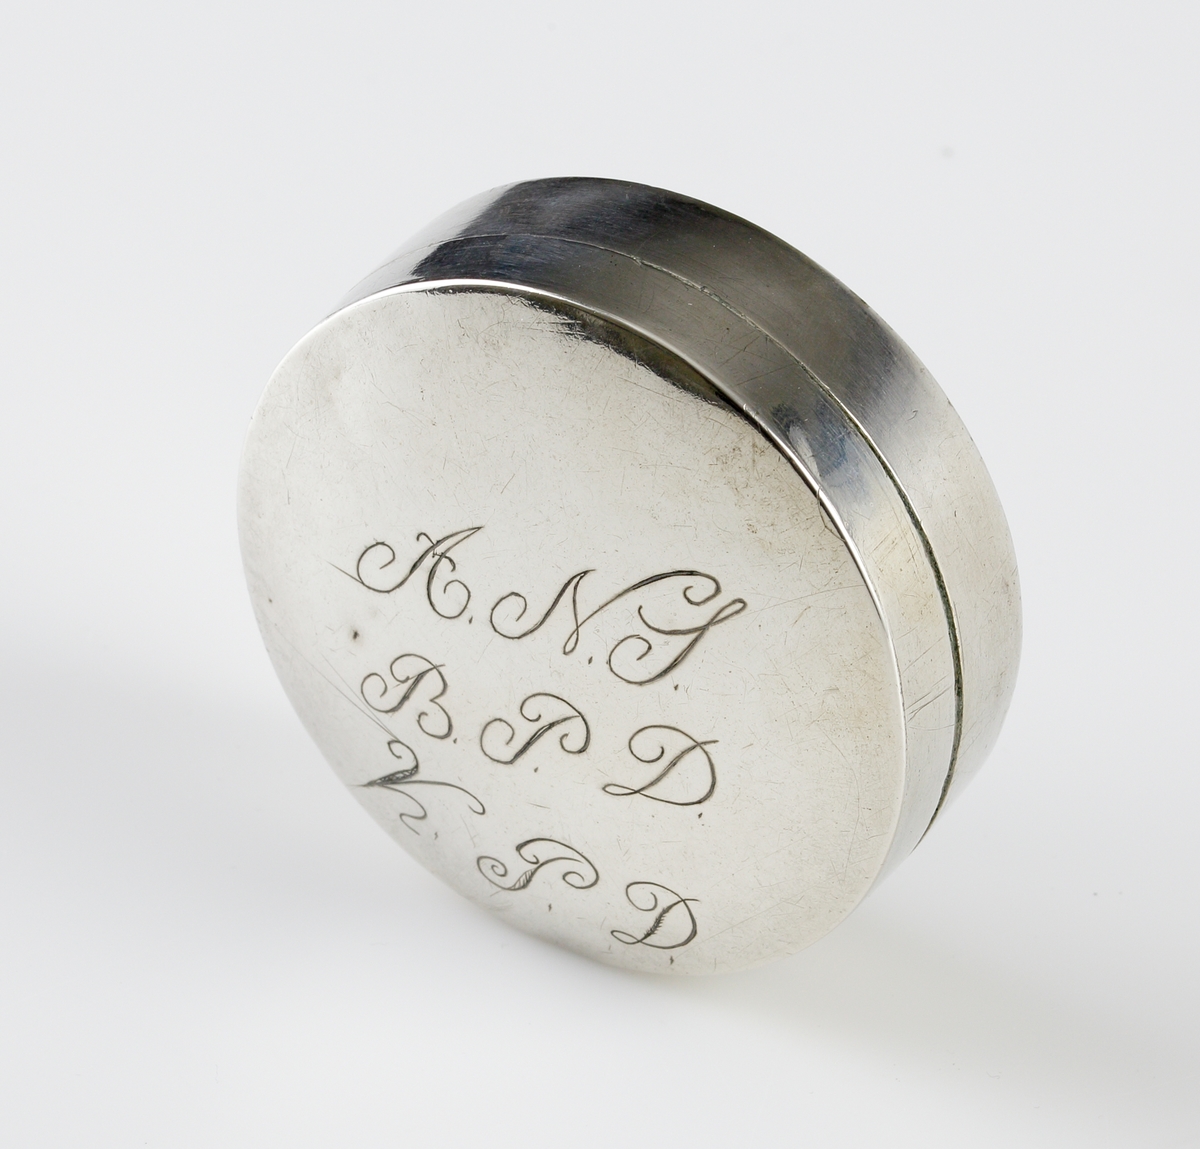 Dosa i silver.
Rund, slät modell med ägarinitialer: "A.N.S., B.P.D., K.P.D." på lockets ovansida. Stämplar på lockets insida.